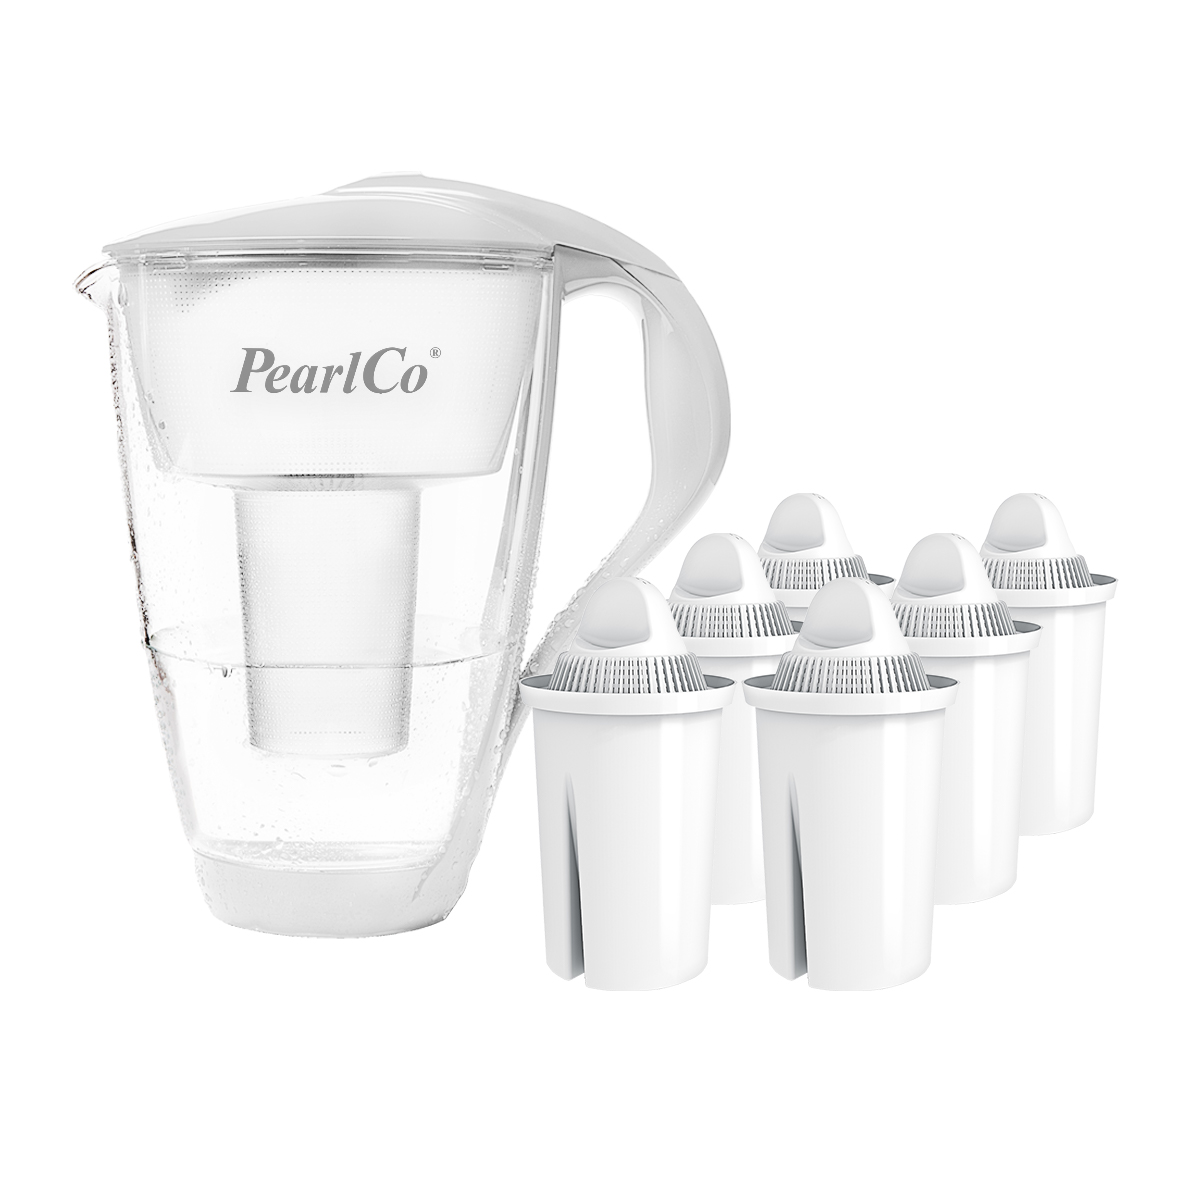 PEARLCO Glas-Wasserfilter weiß inkl. Wasserfilter Universal 6 Filterkartuschen